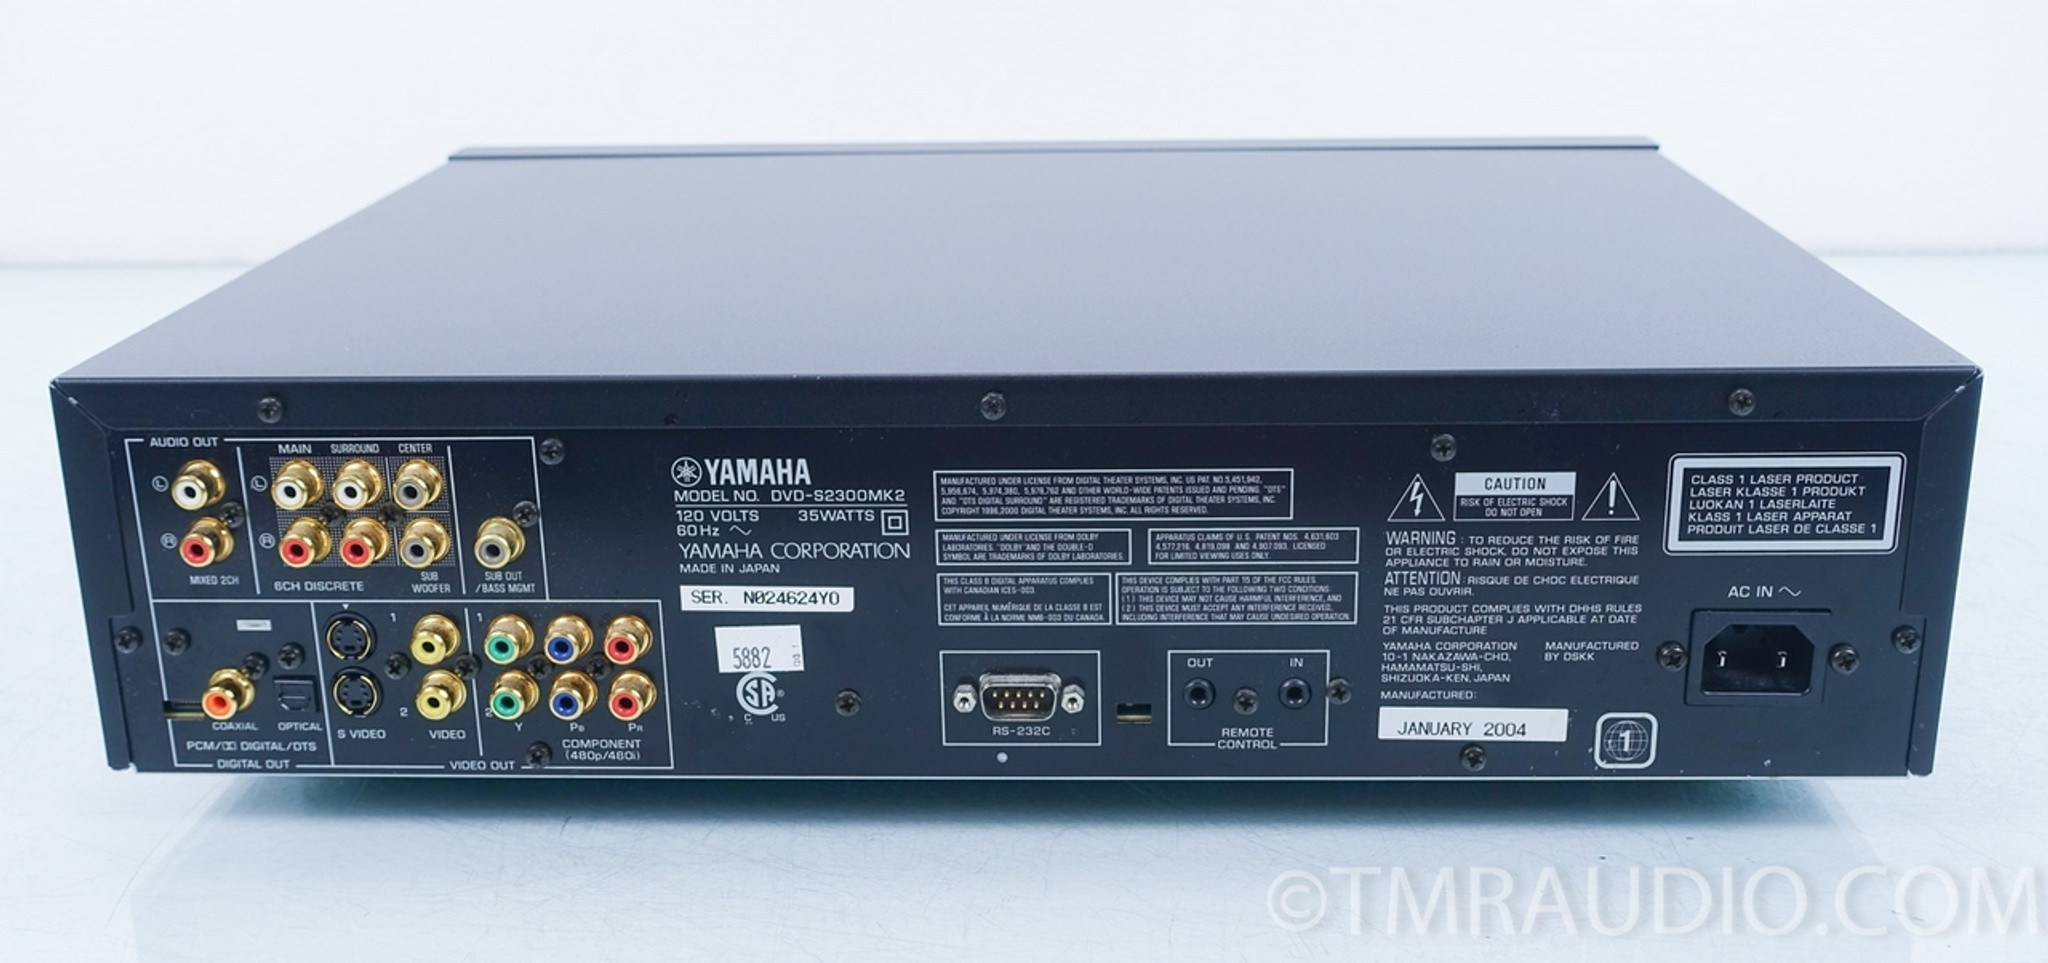 Yamaha DVD-S2300 MK2 CD / DVD / SACD Player